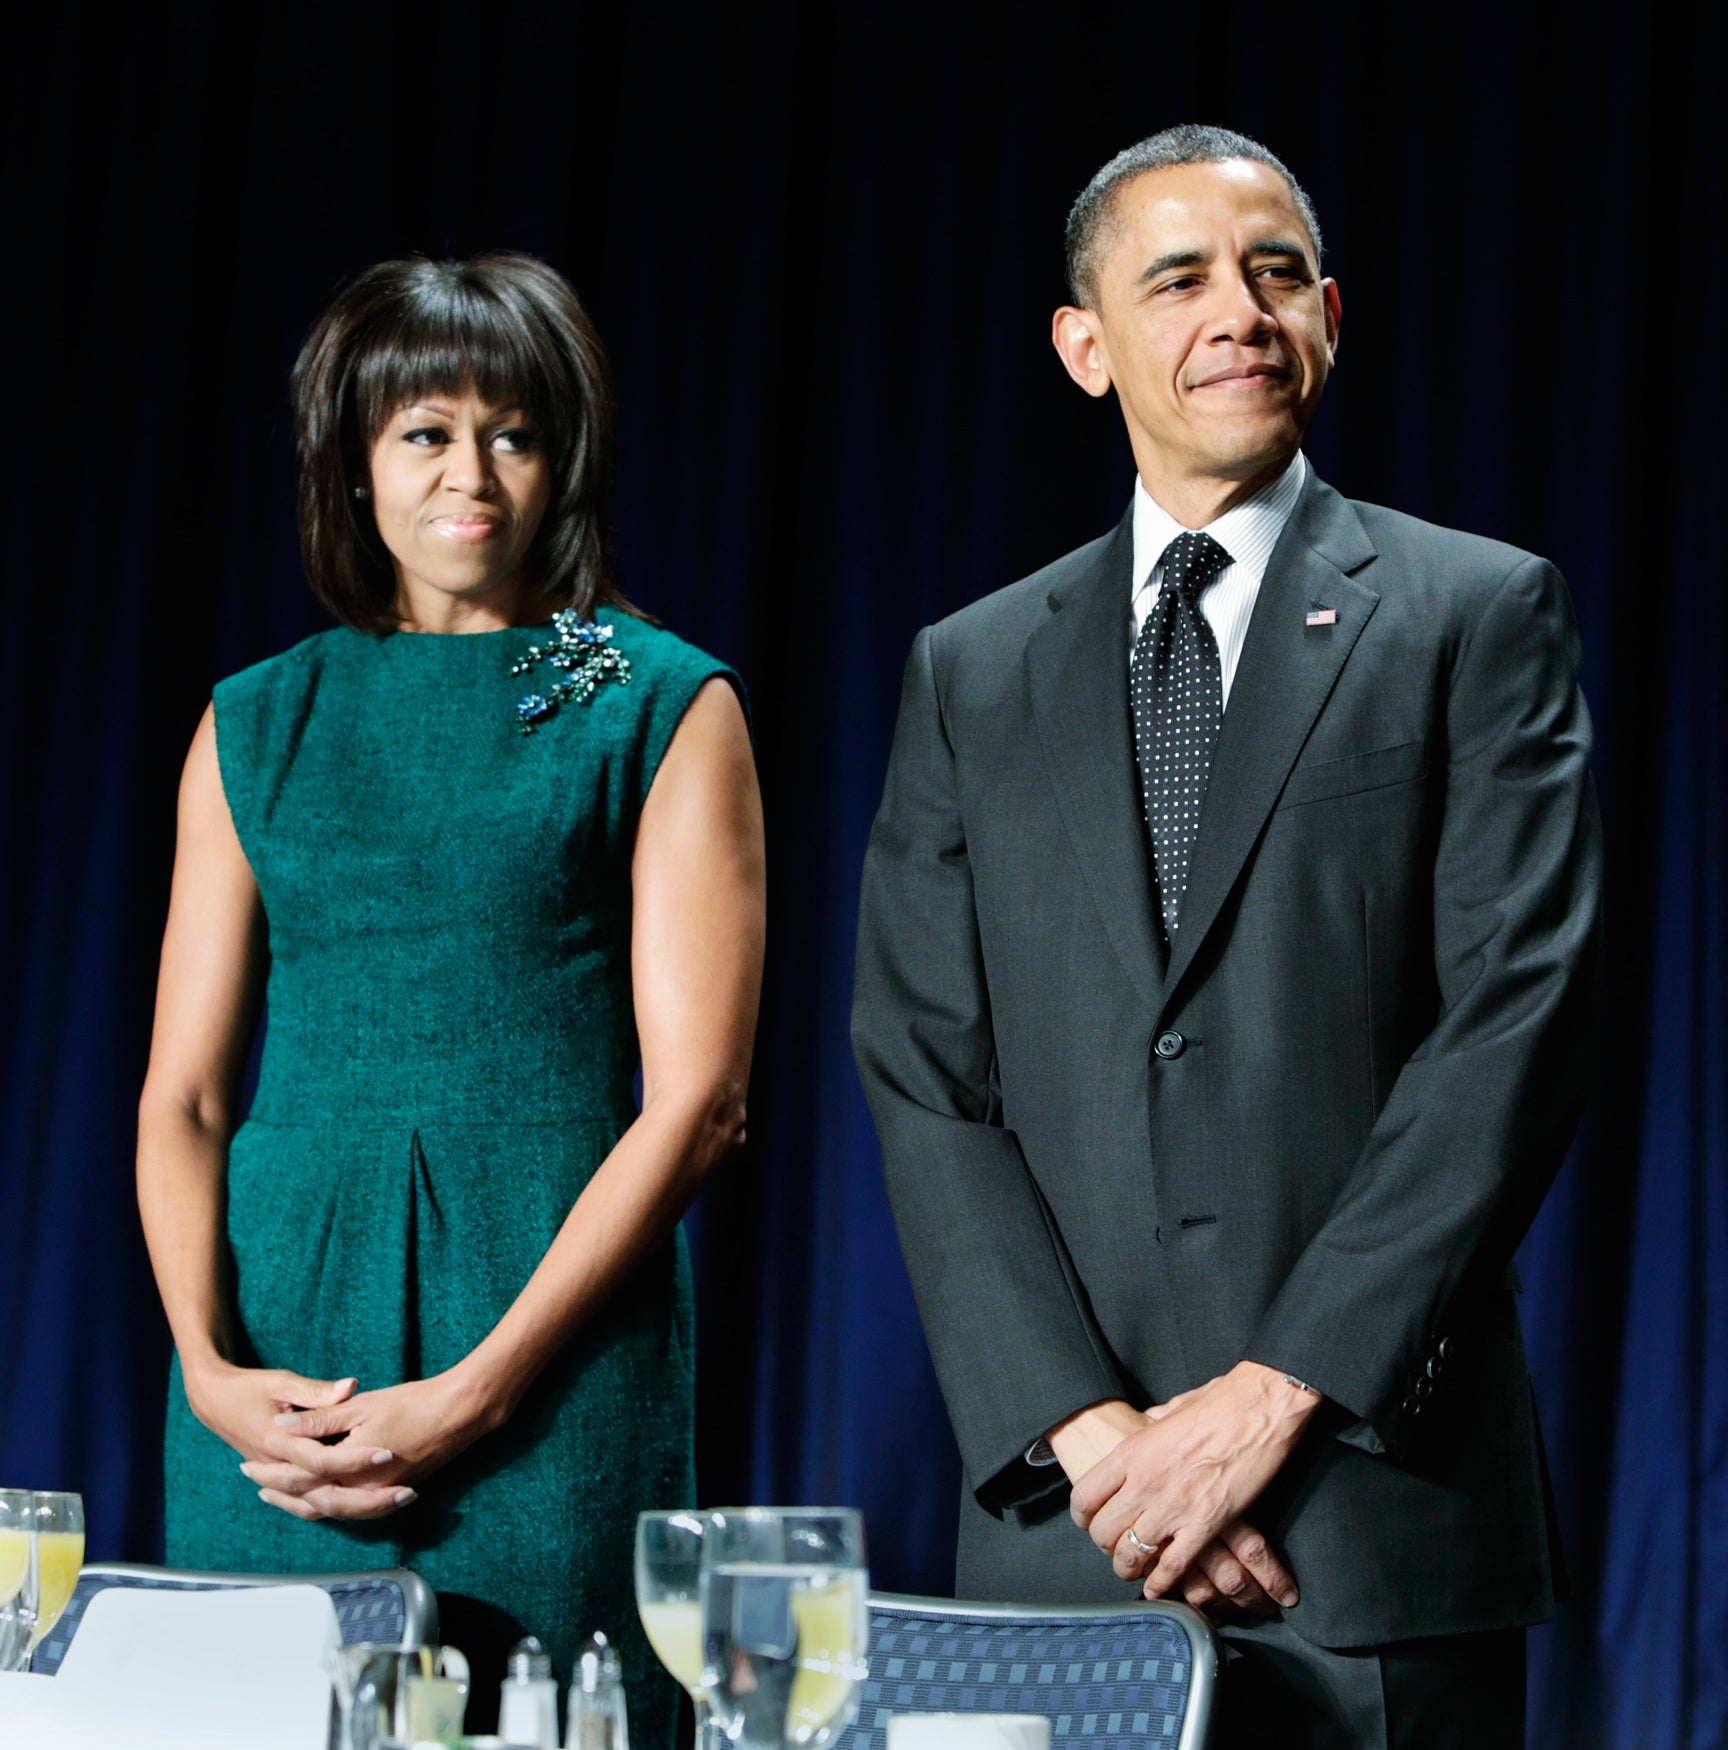 President: Michelle Obama Hacking Investigation Underway